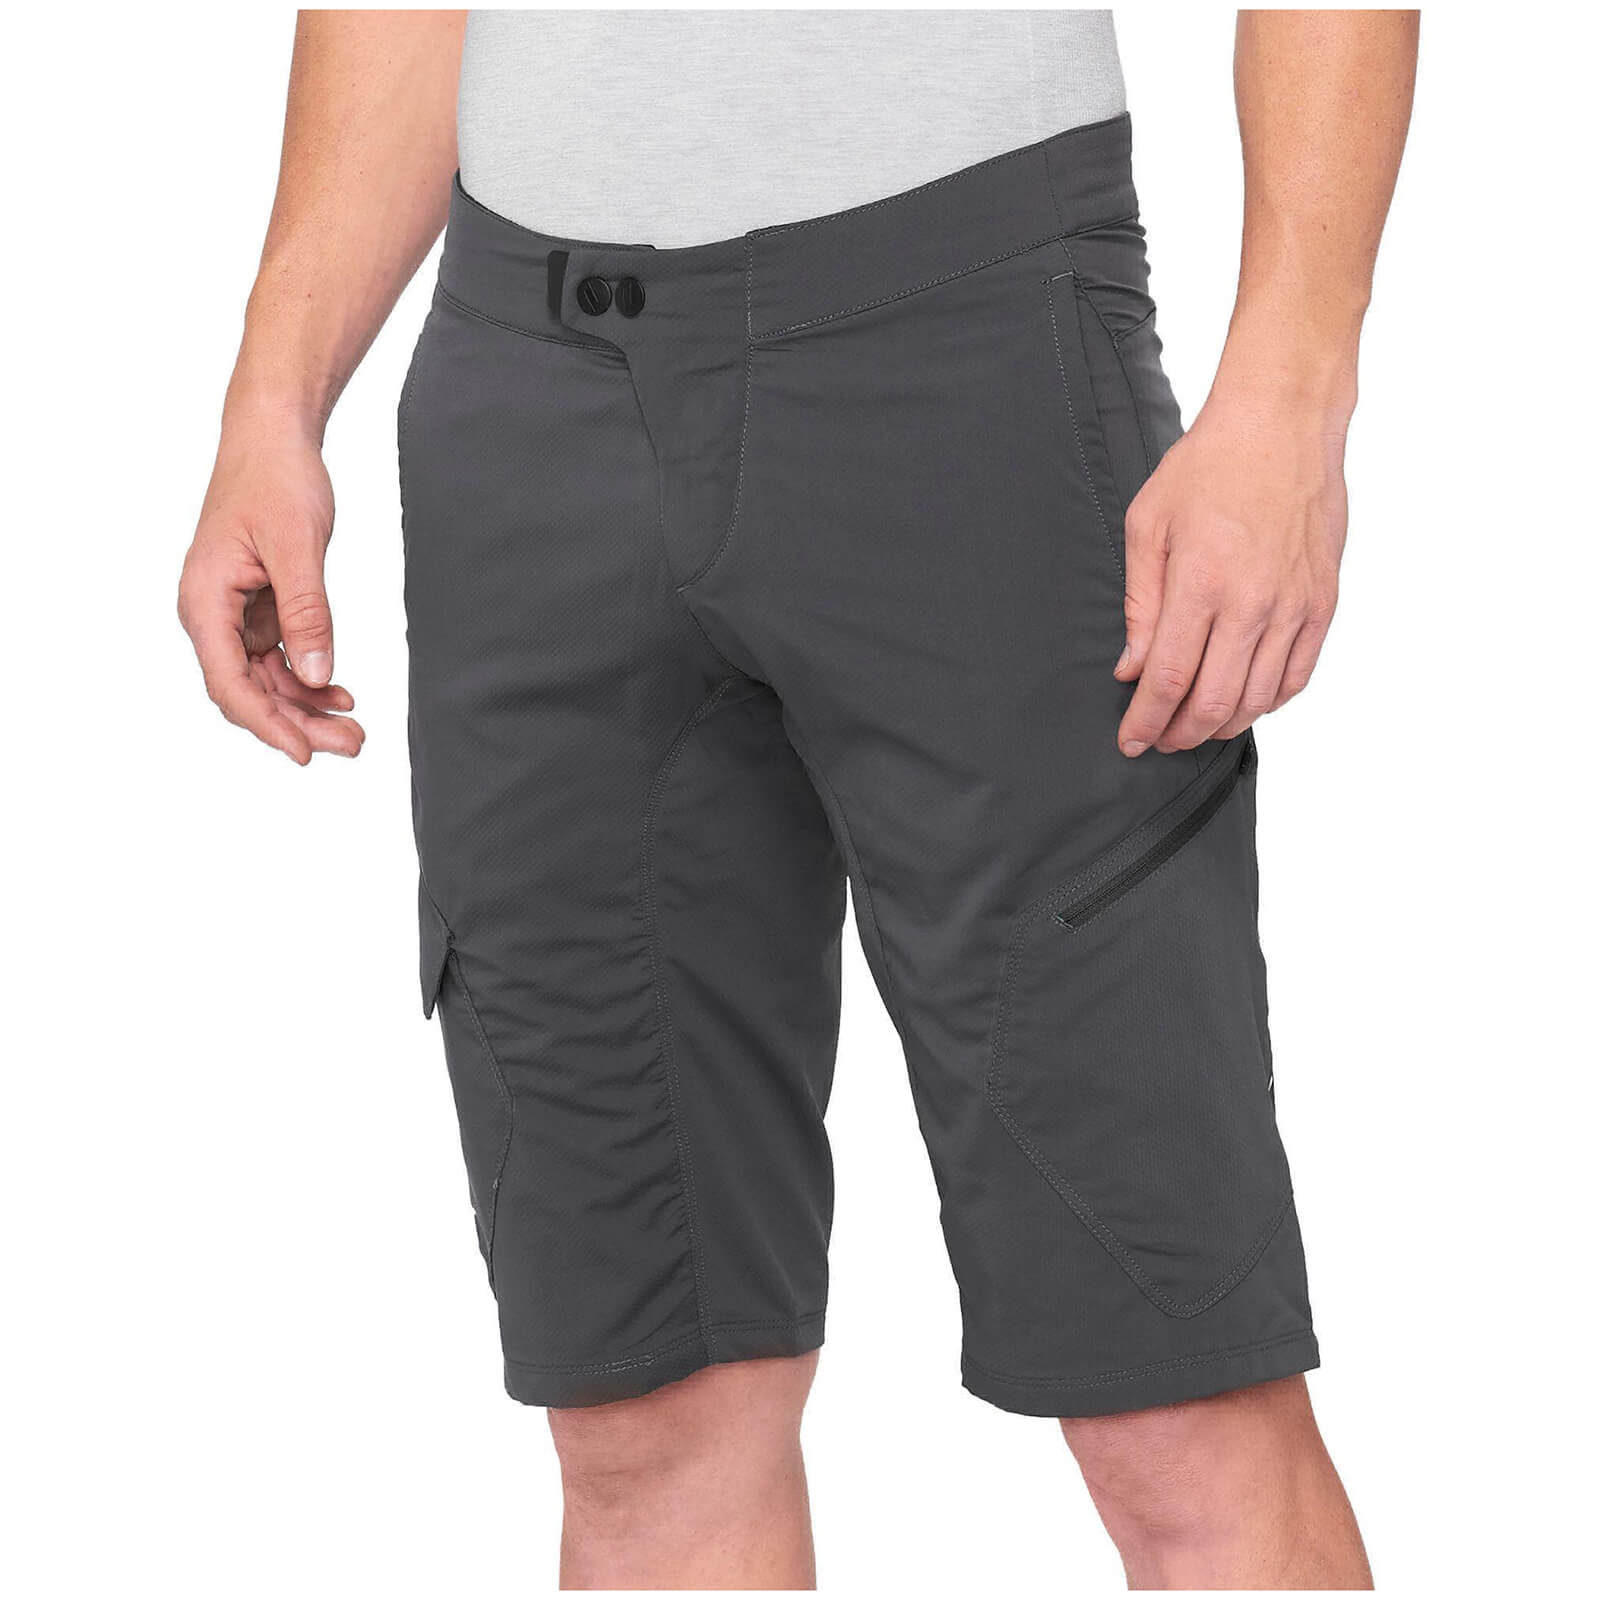 100% Ridecamp MTB Shorts - 34 - Charcoal